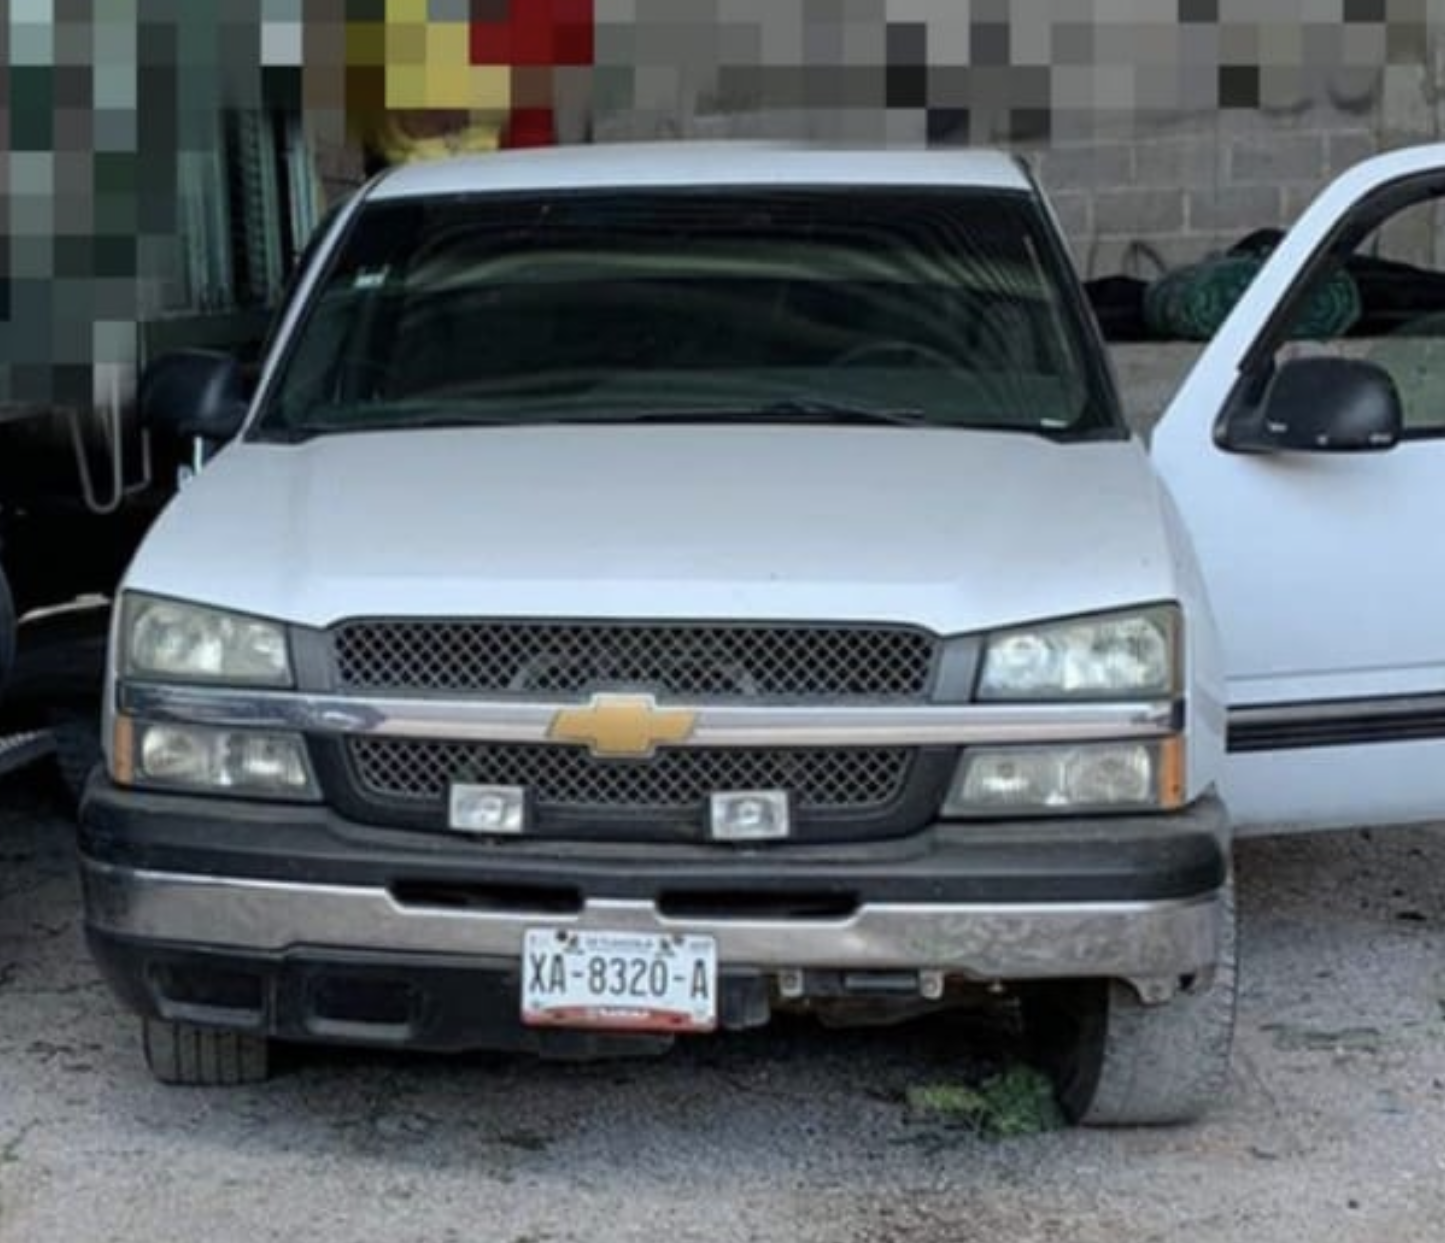 Durante la madrugada roban camioneta en un domicilio en Tecamachalco 